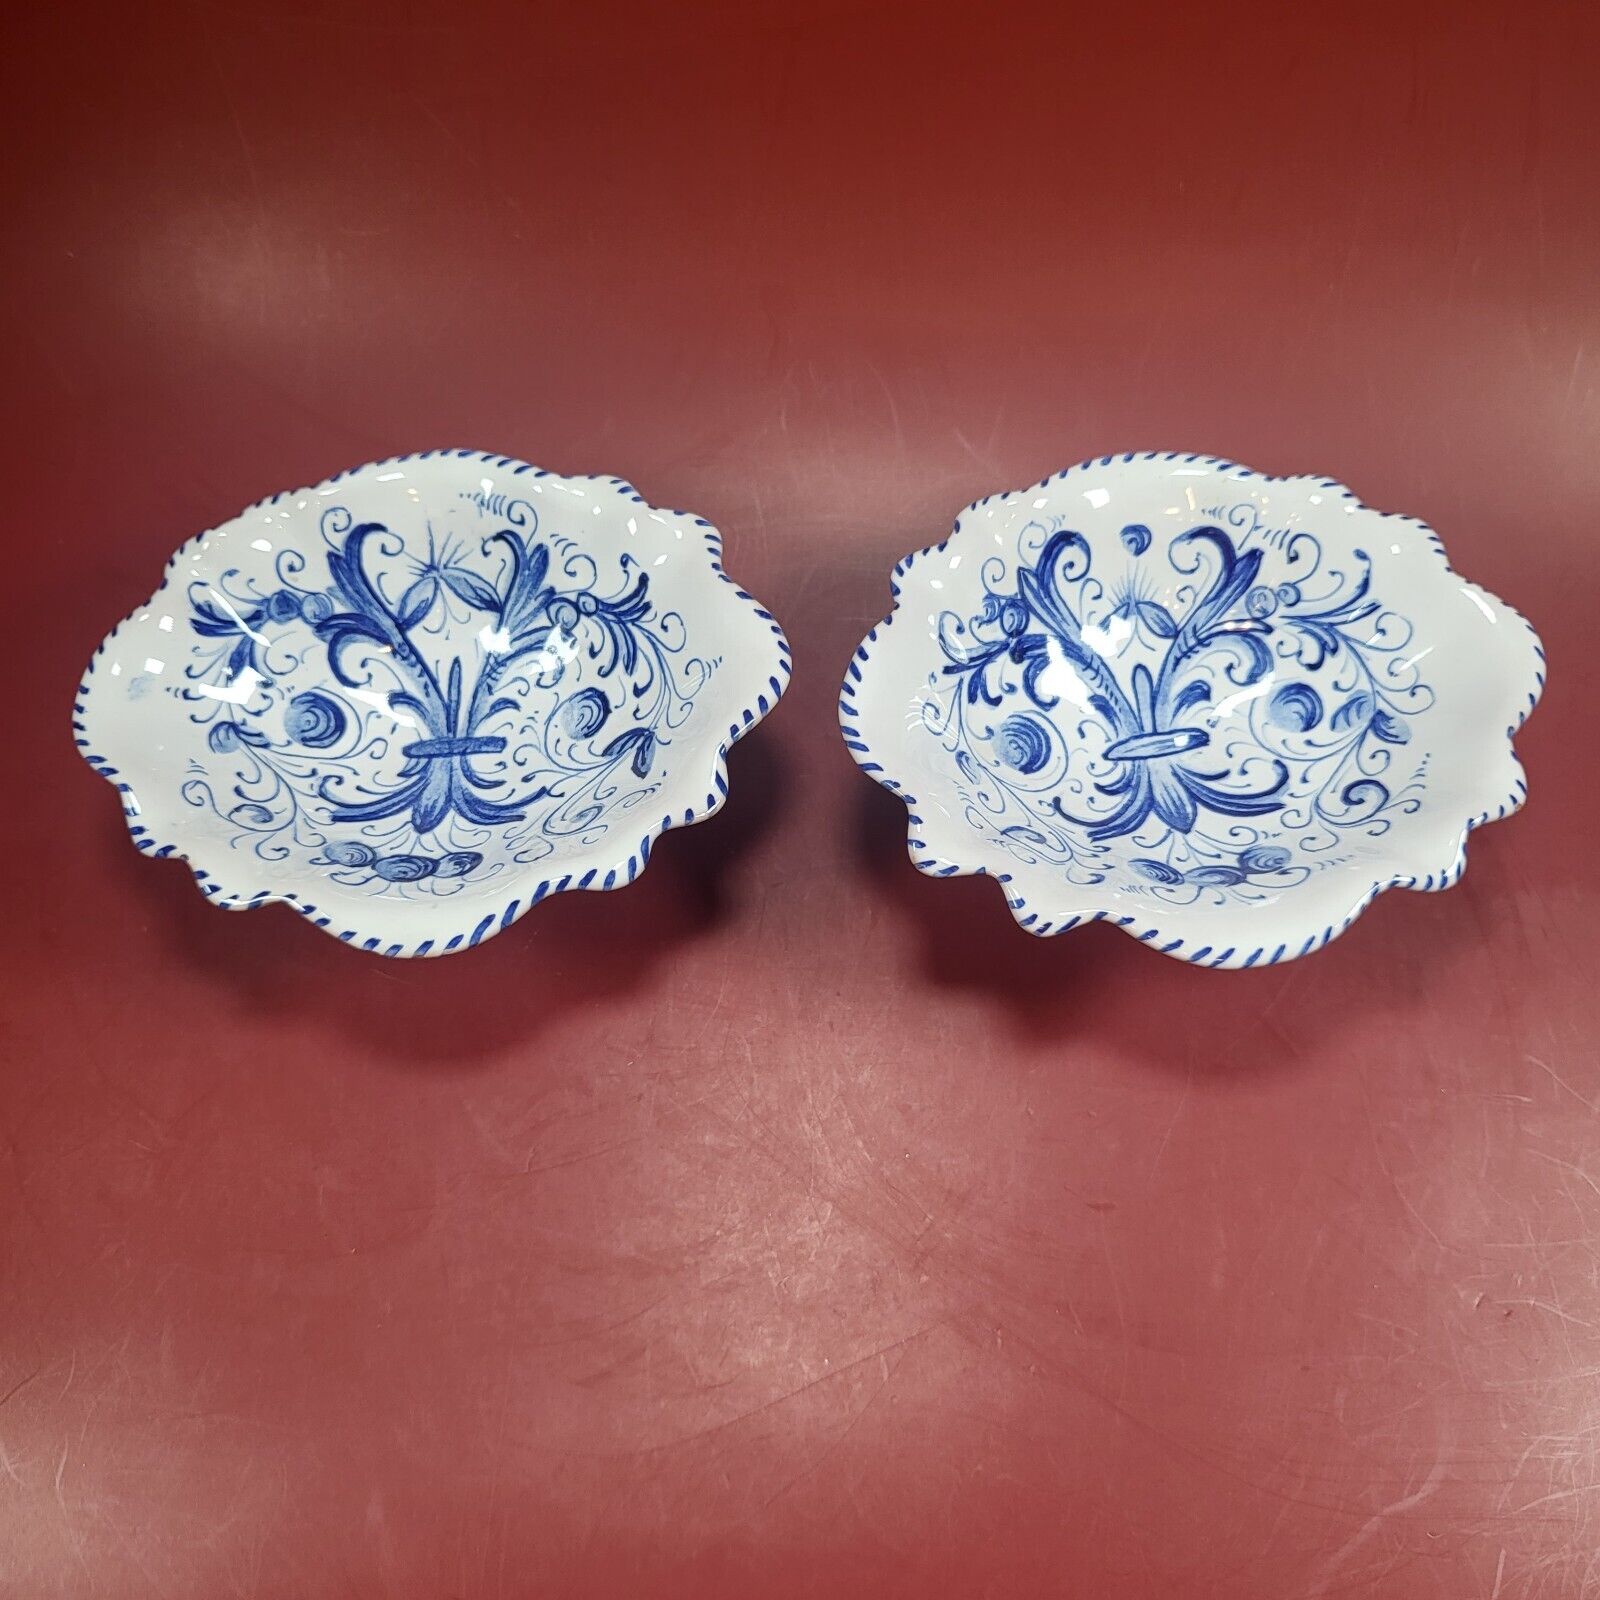 Deruta Majolica Maioliche Italy Soap Trinket Dish 2pc Blue White Floral Pottery